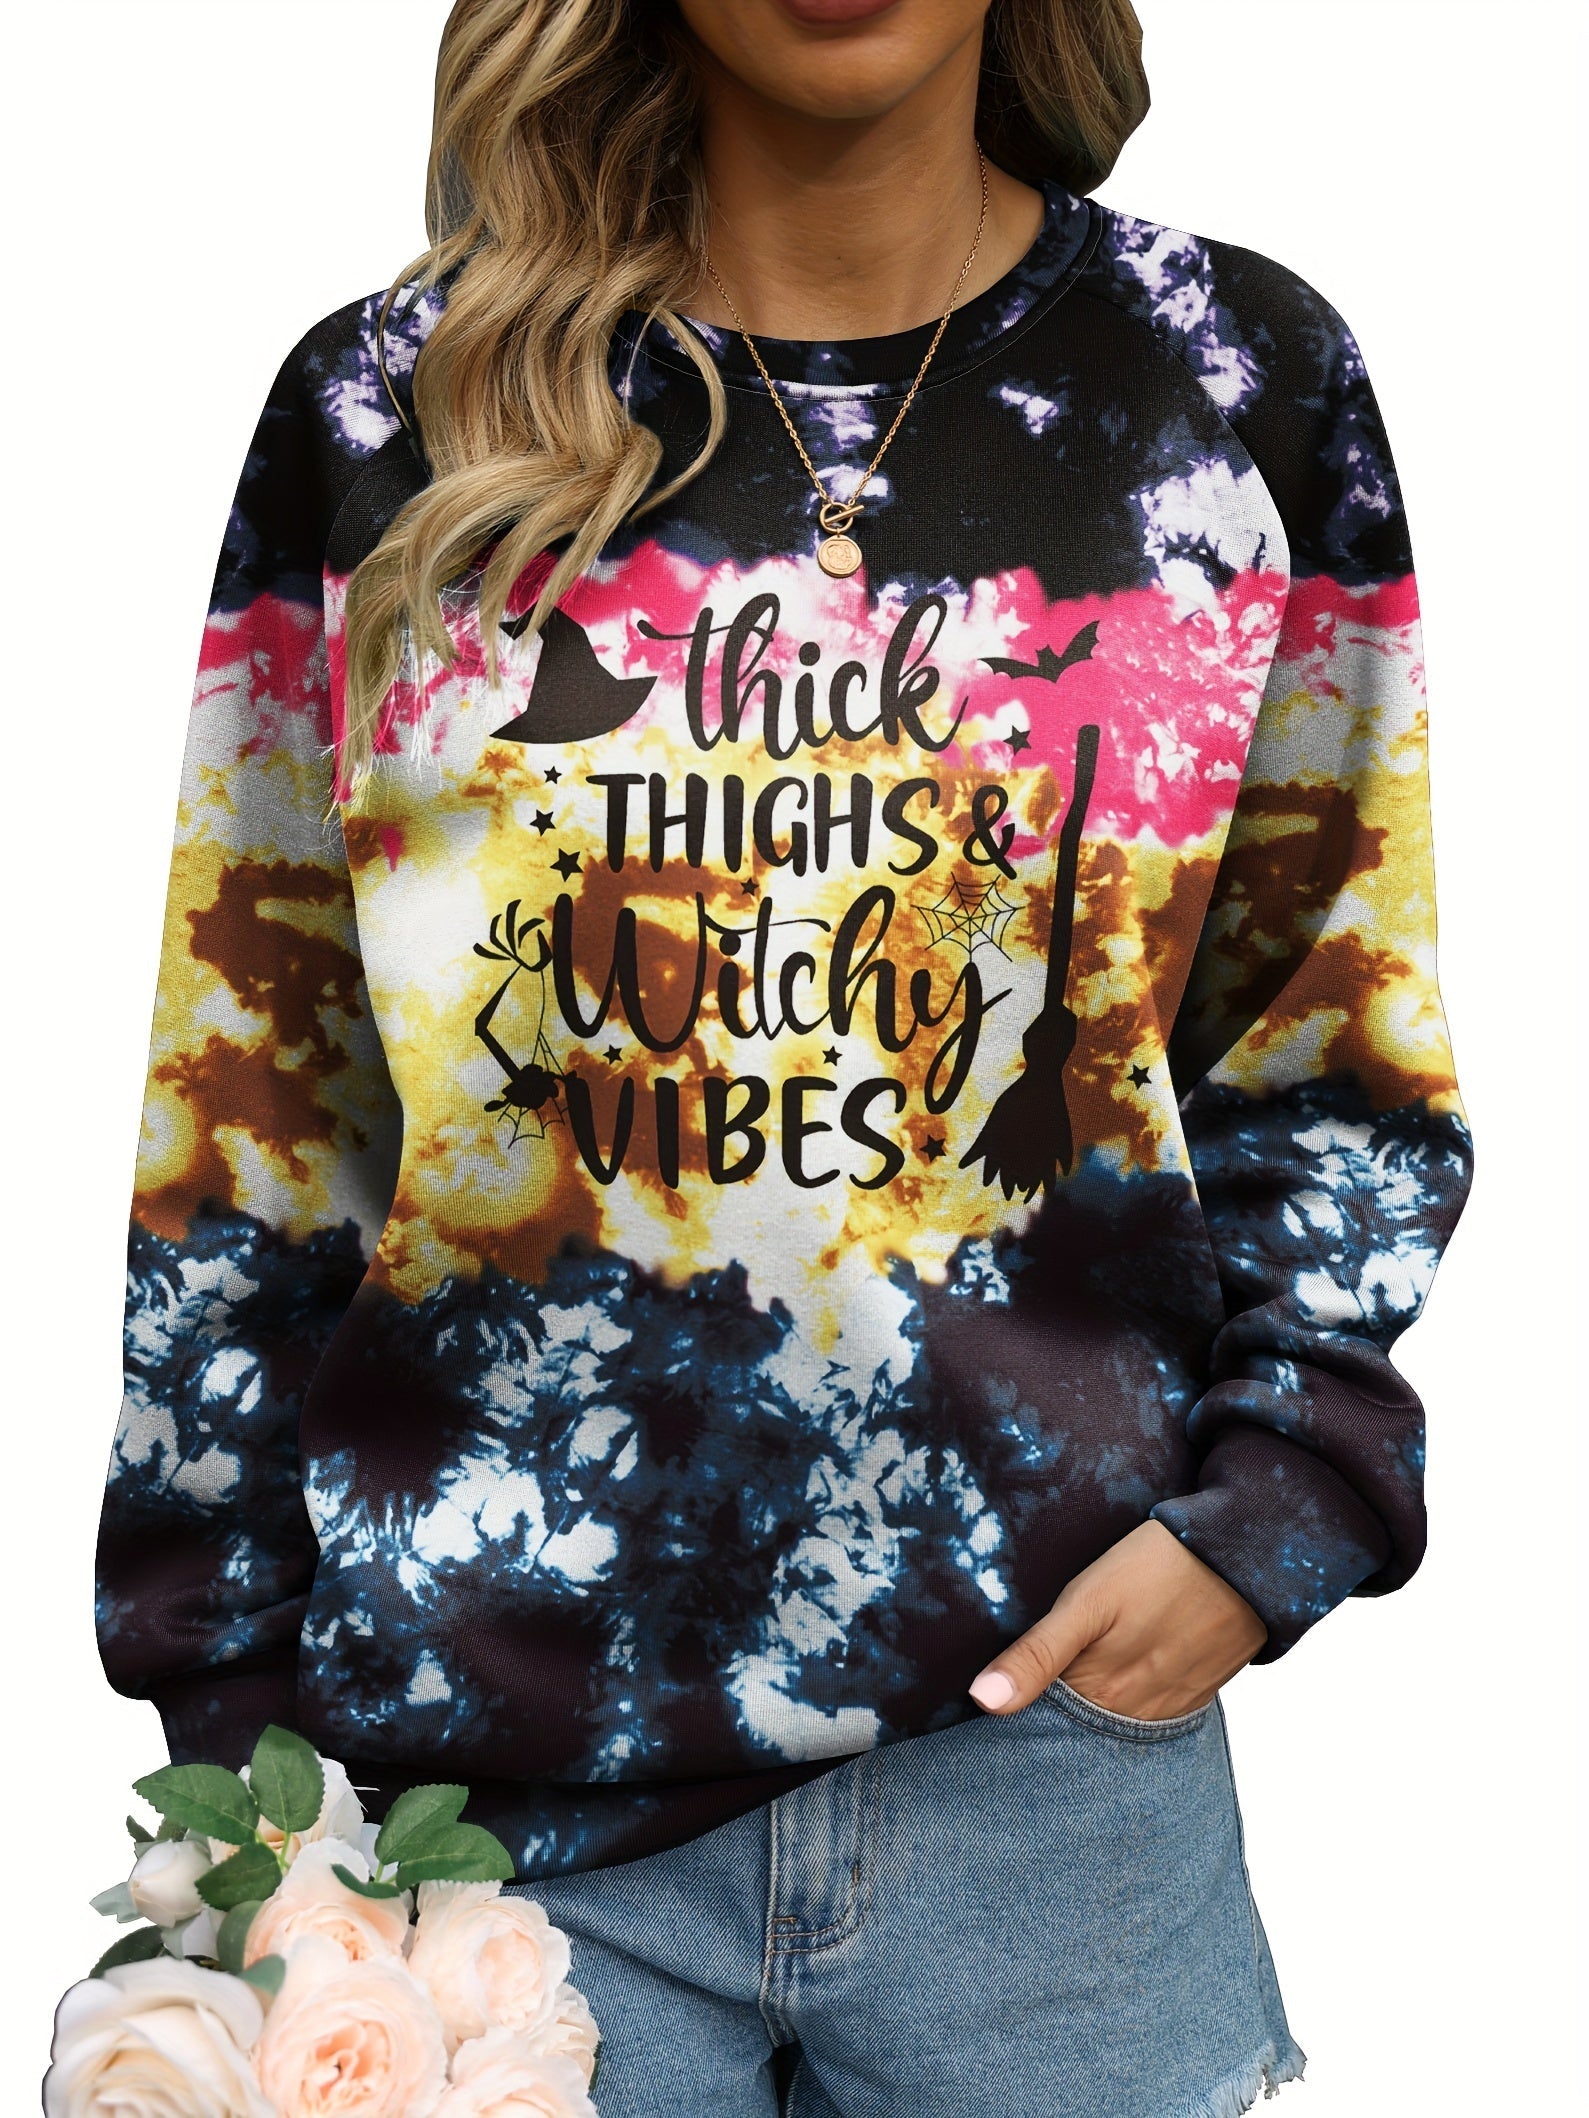 Spooky Season Plus Size Halloween Sweatshirt for Women